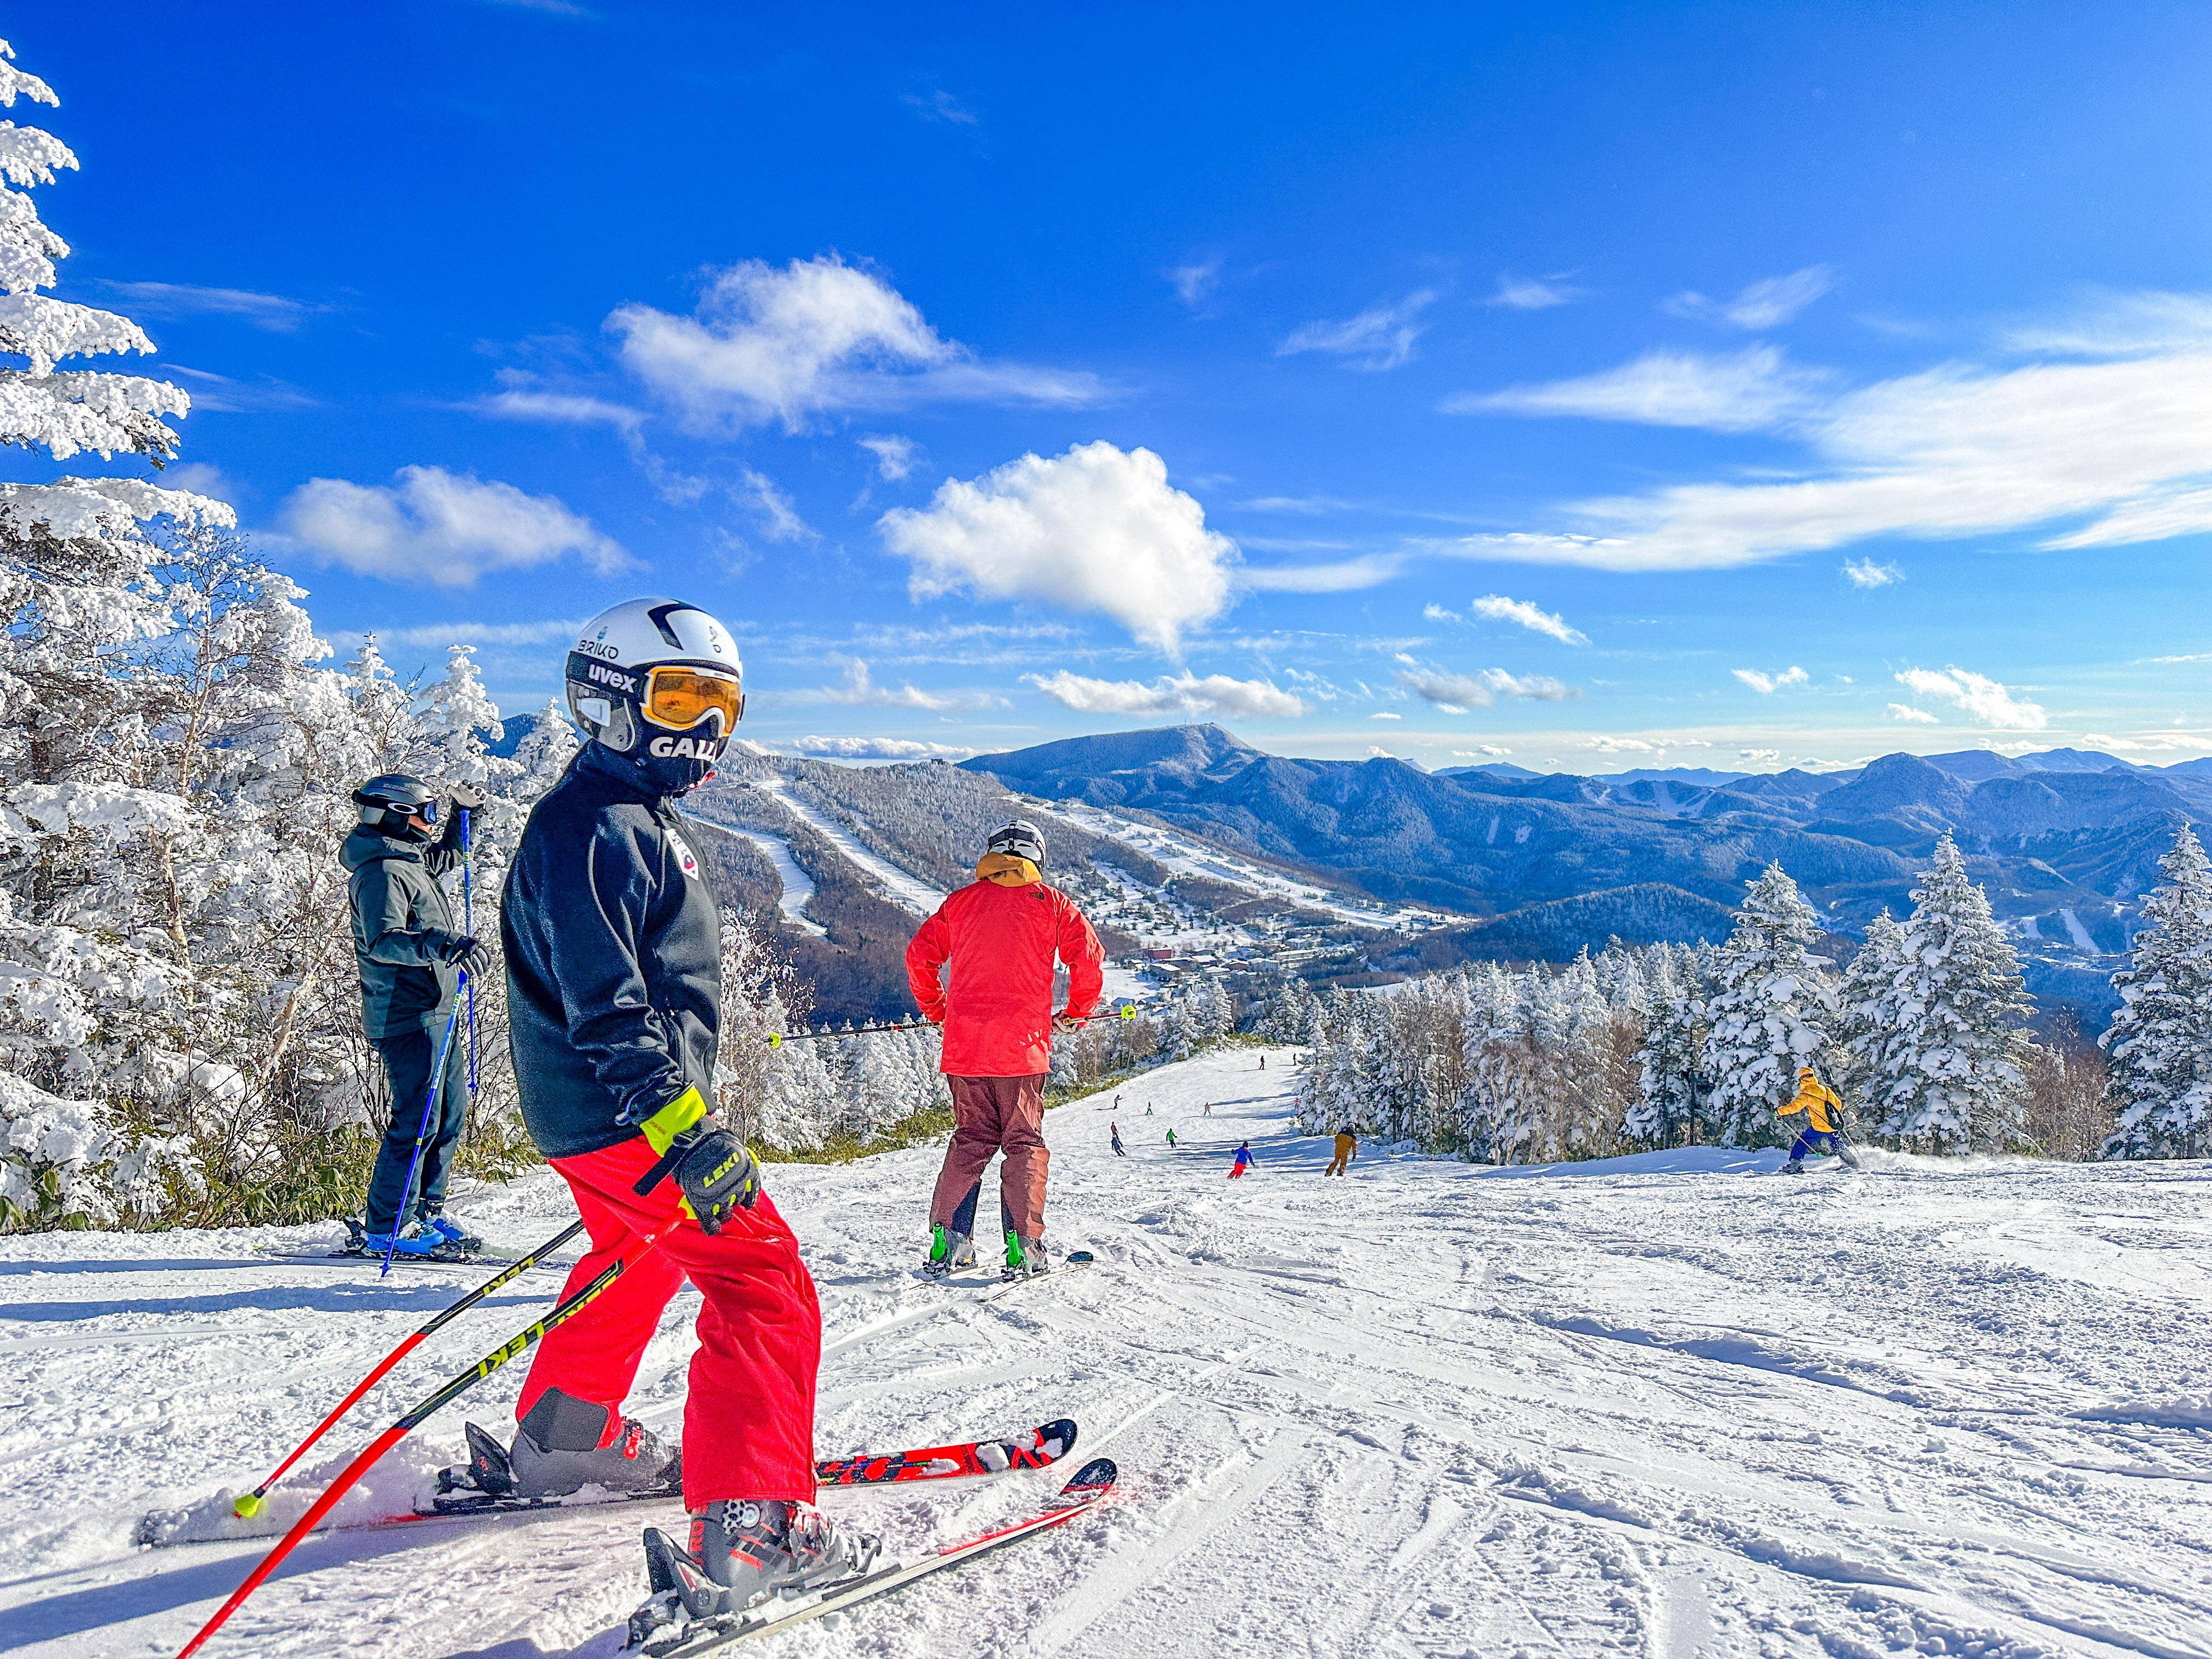 日本最大的滑雪度假胜地,长野志贺高原,曾是冬奥会的主办地